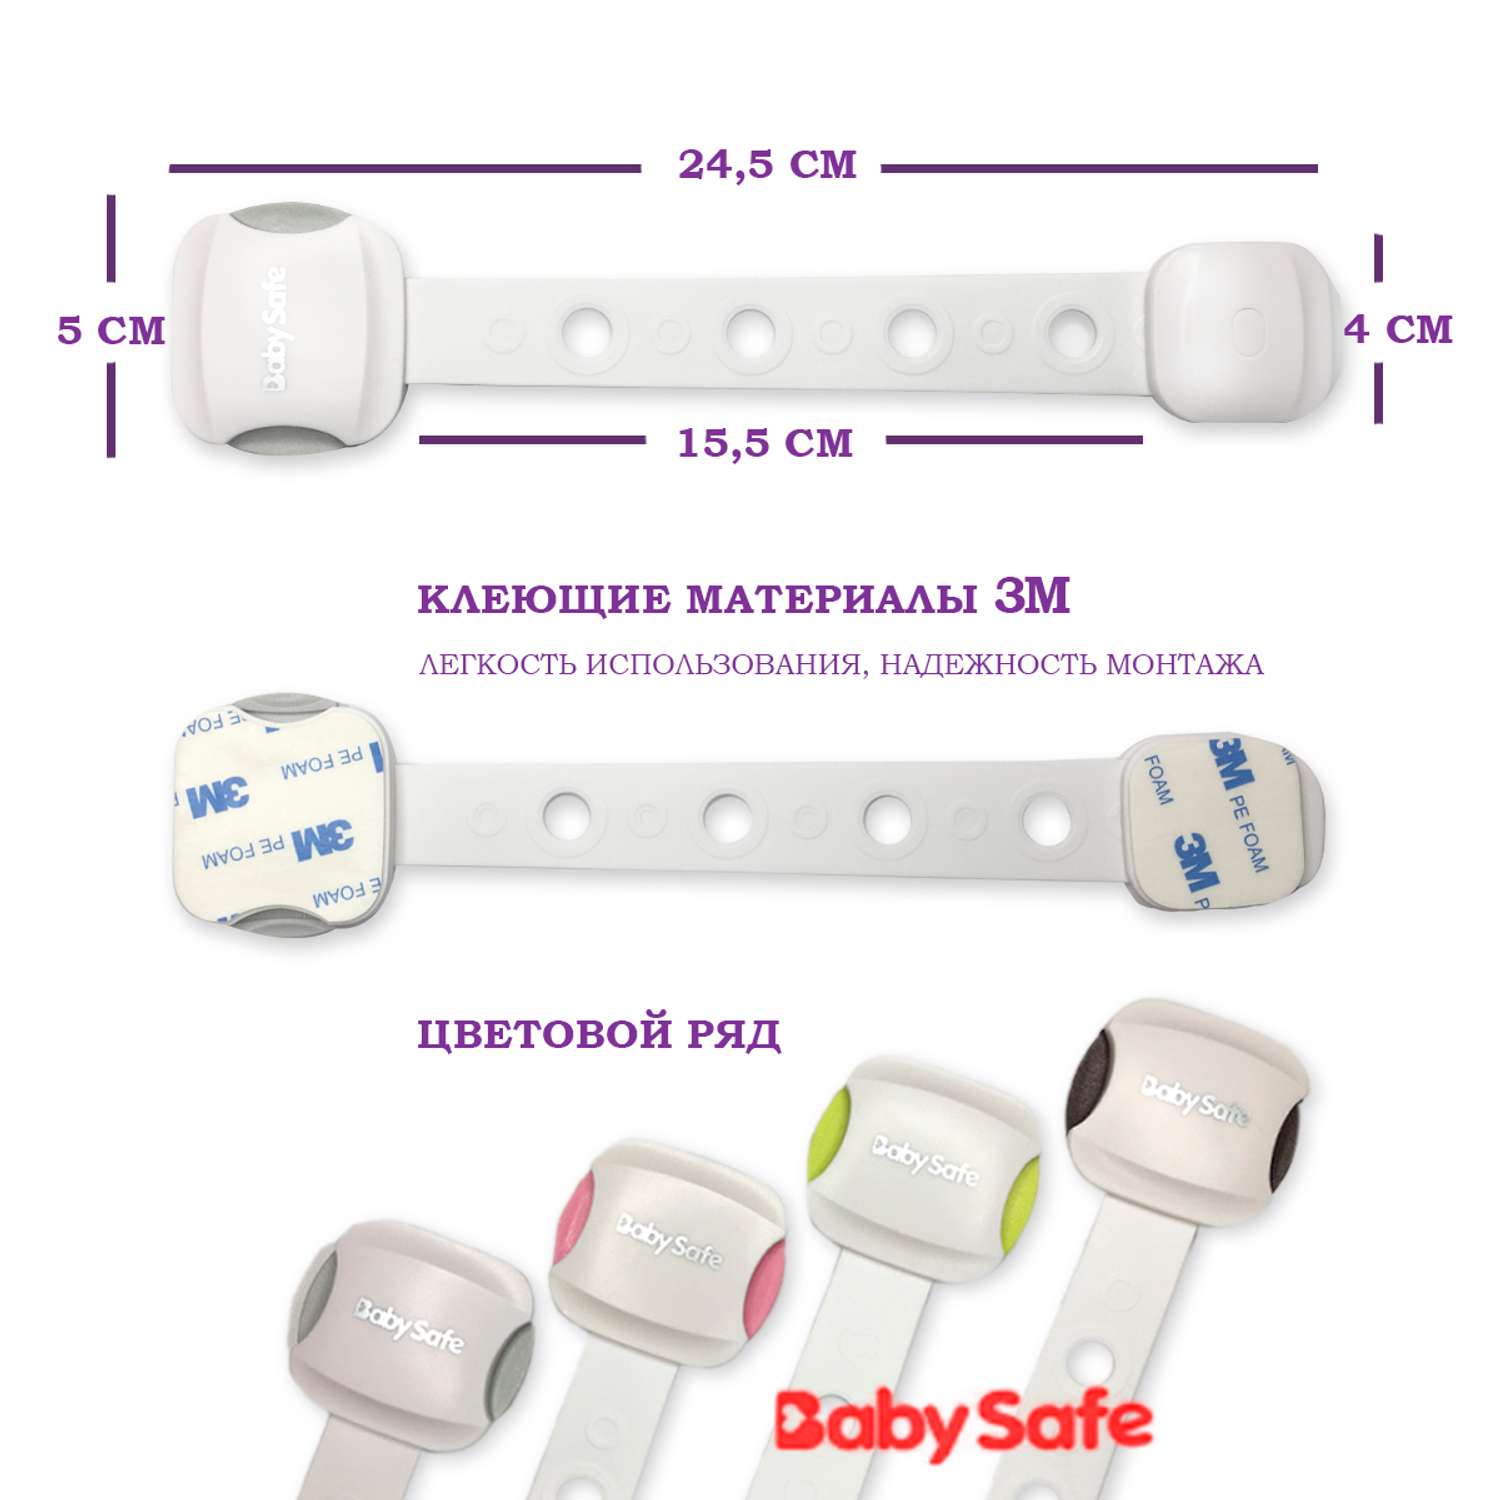 Набор блокираторов Baby Safe для дверей ящиков и шкафов и кухонной техники 5 шт цвет серый - фото 2